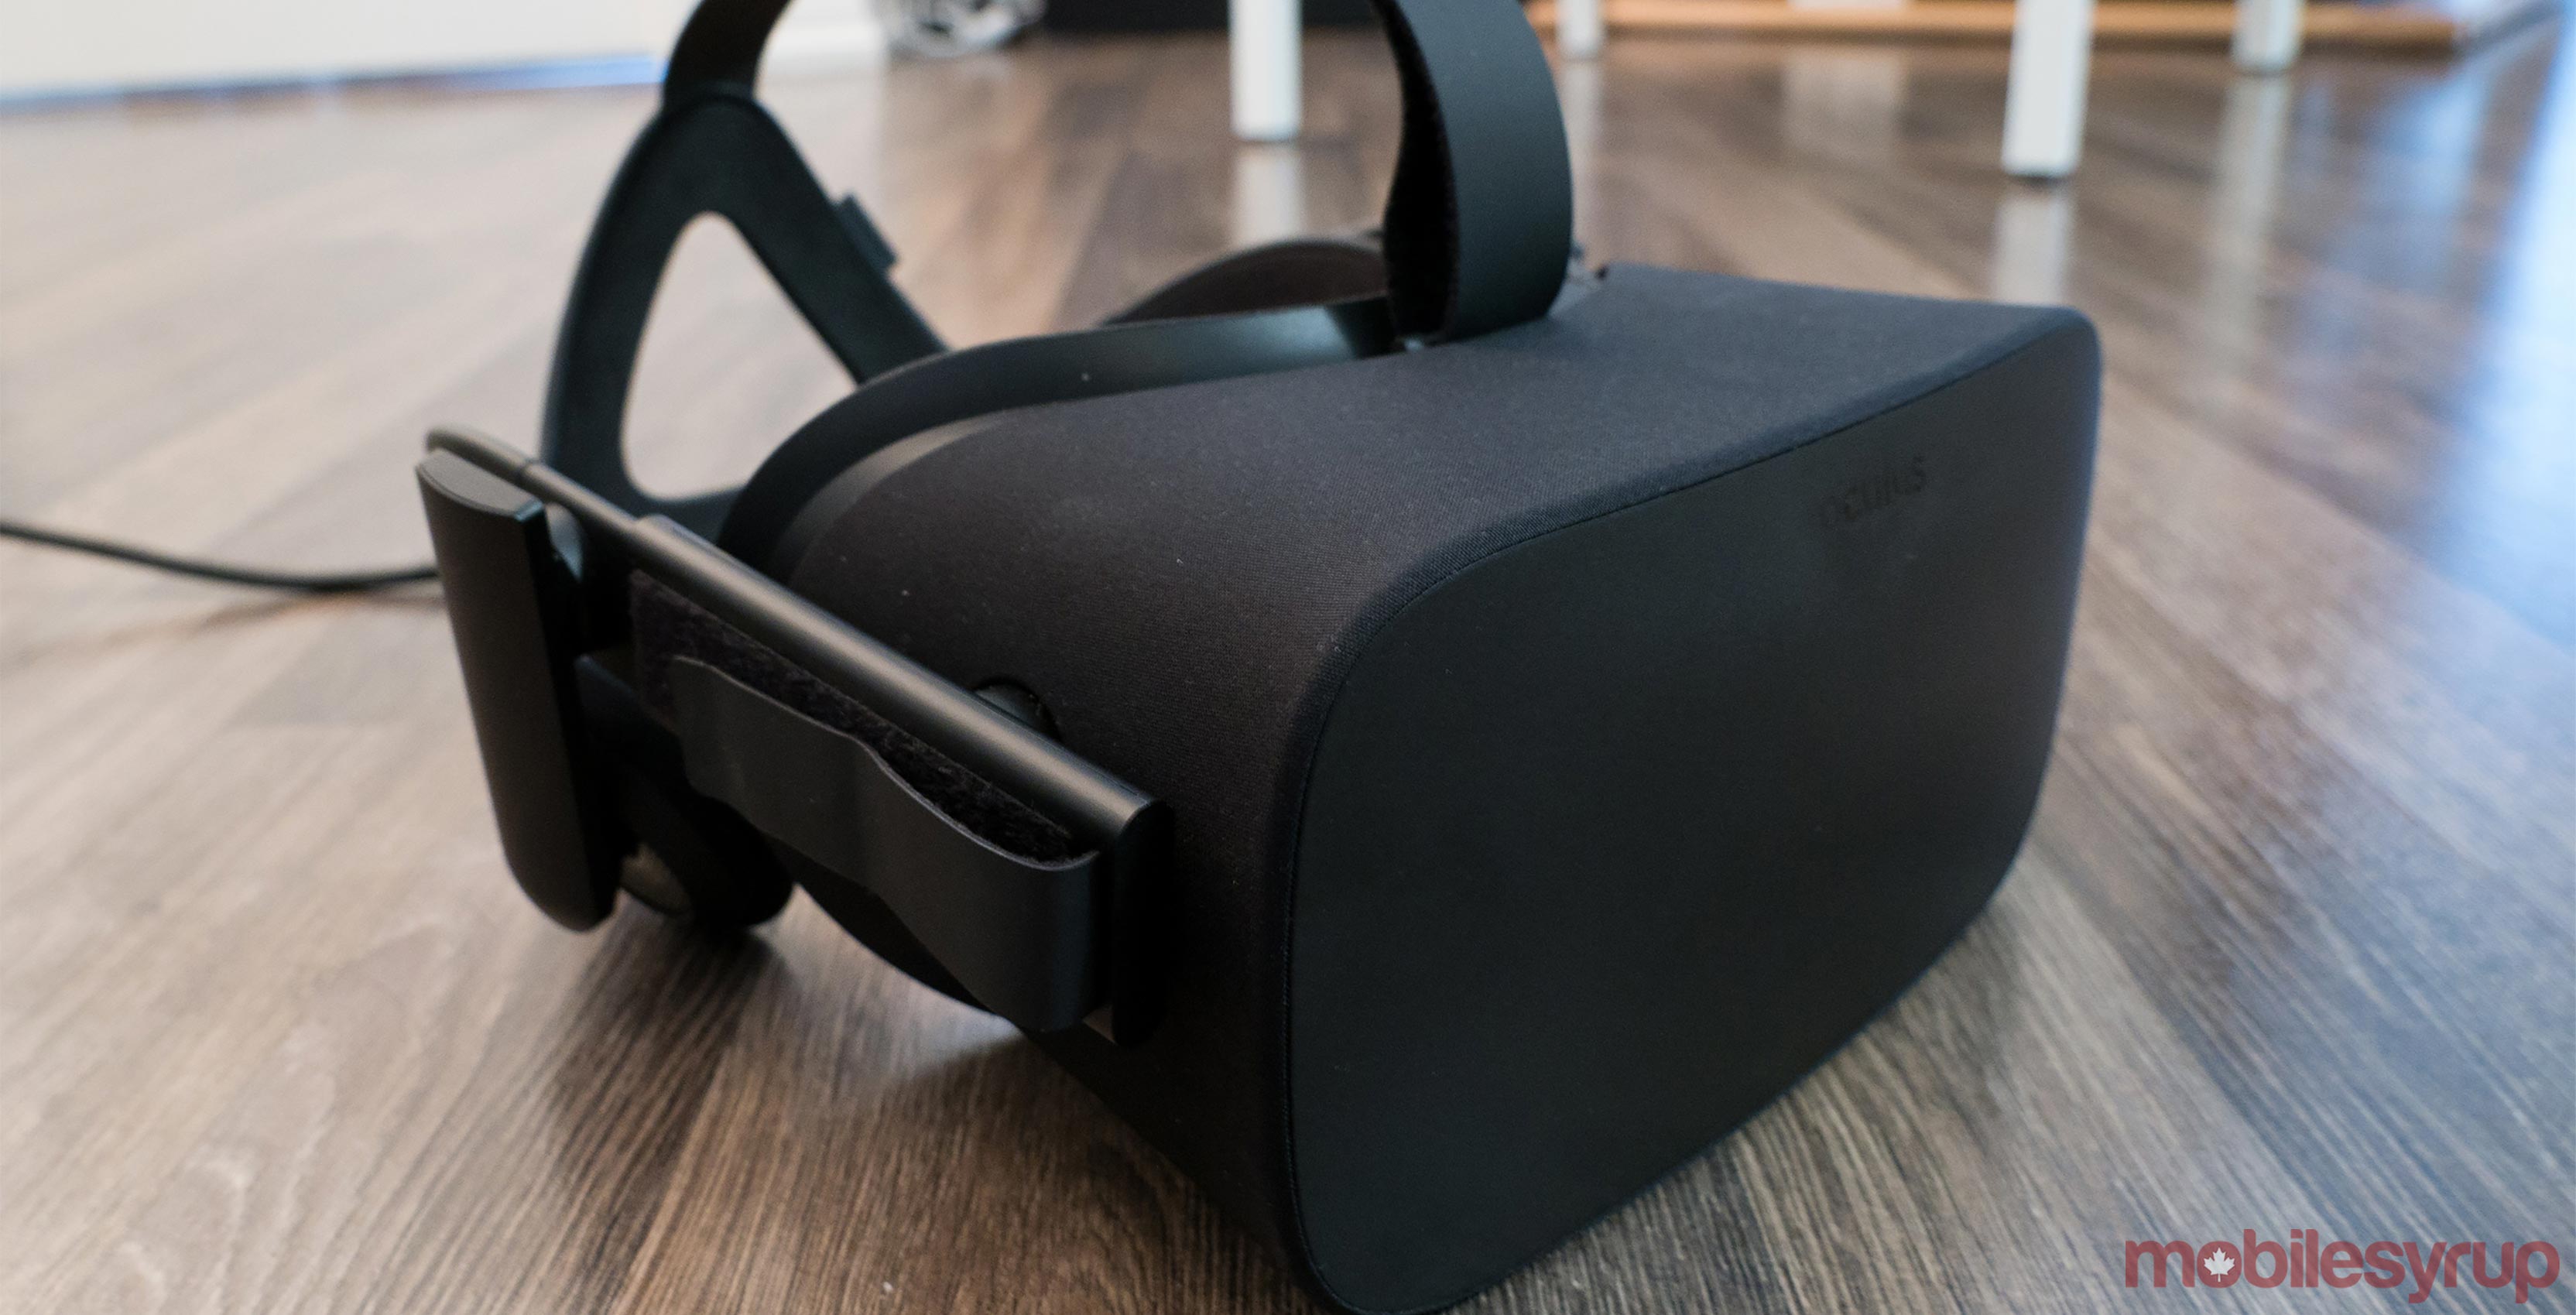 Oculus Rift headset on table